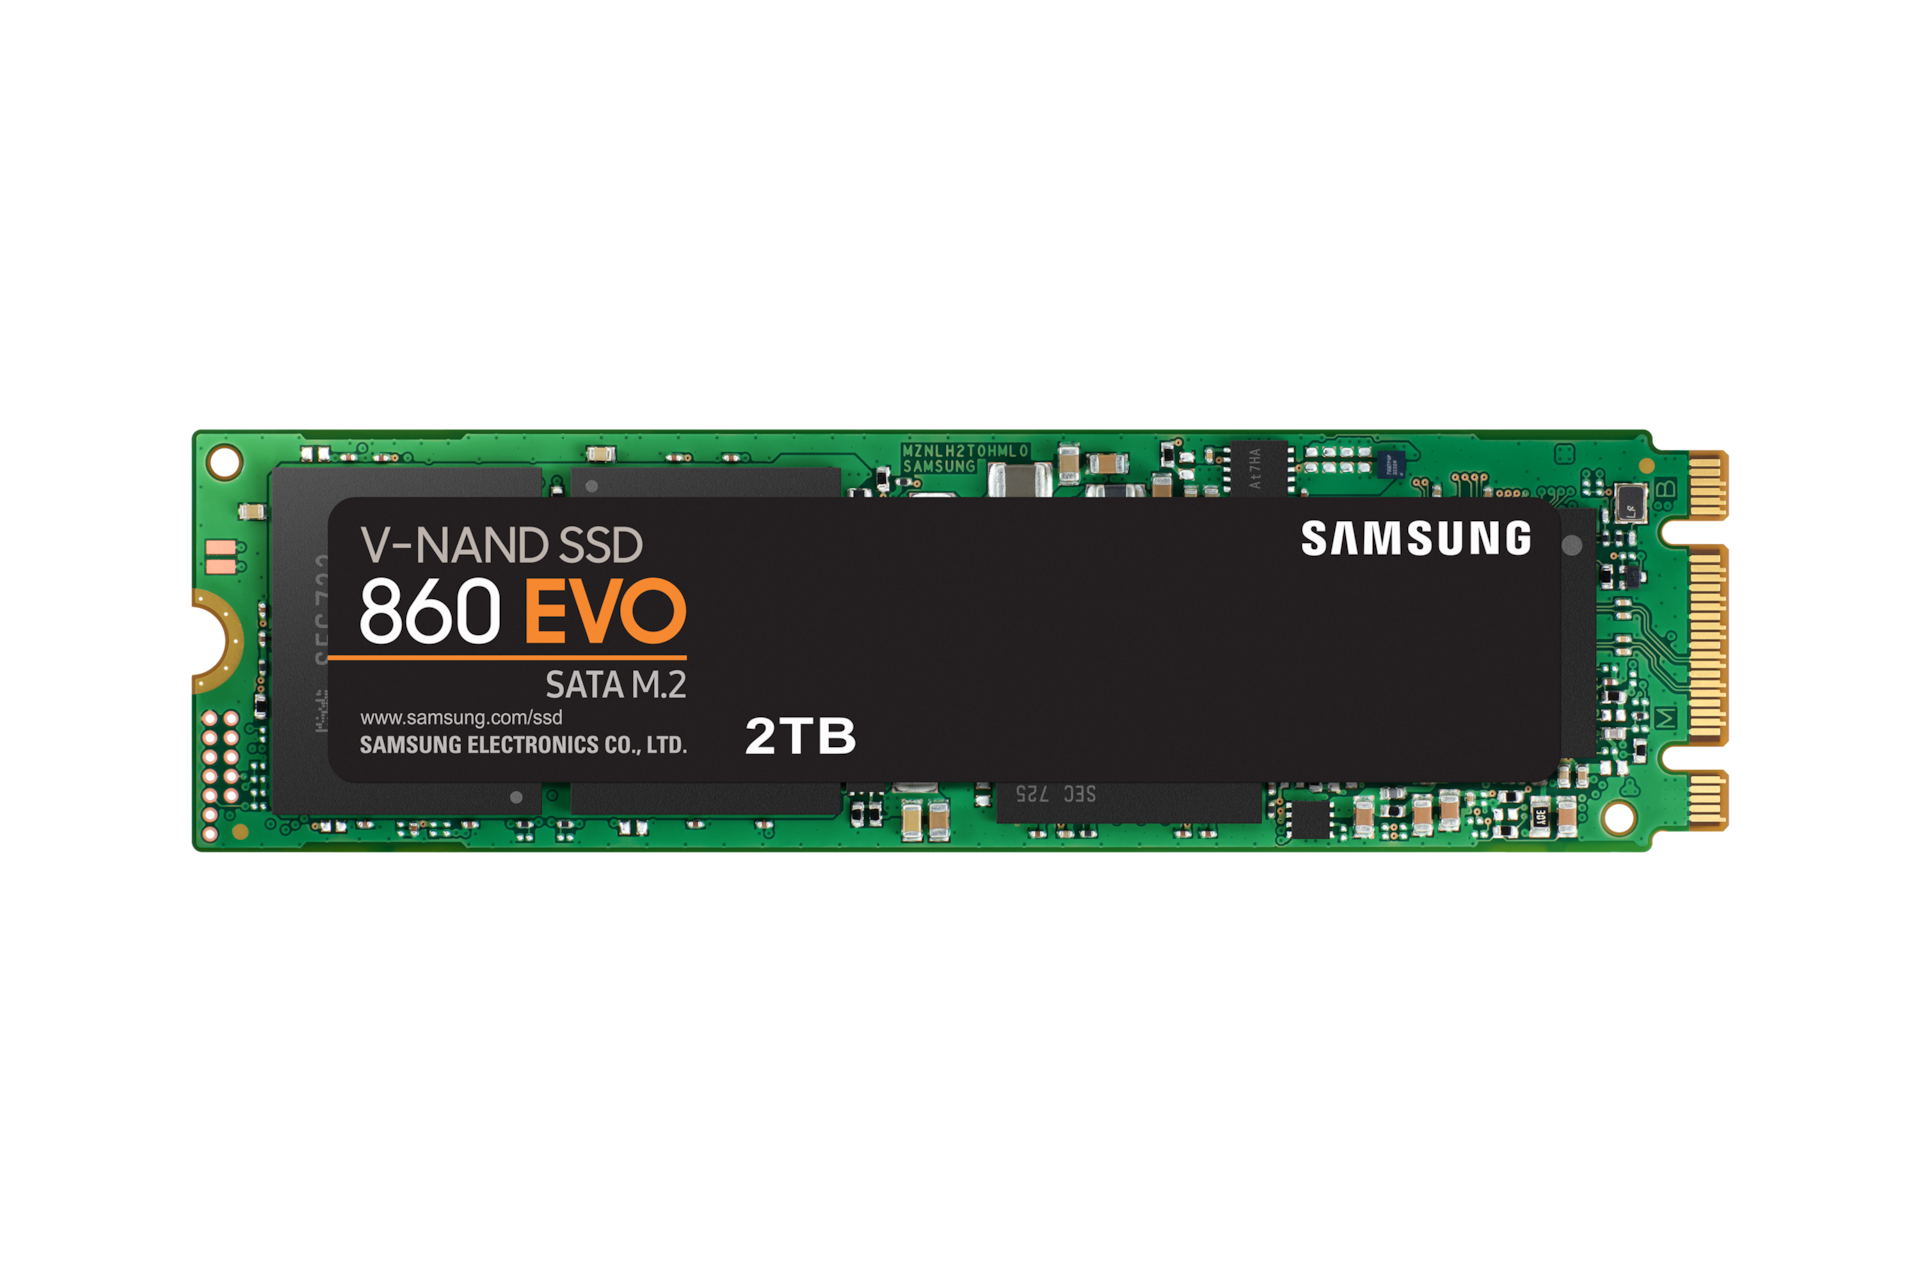 Test du SSD Samsung 870 QVO SATA (8 To) 